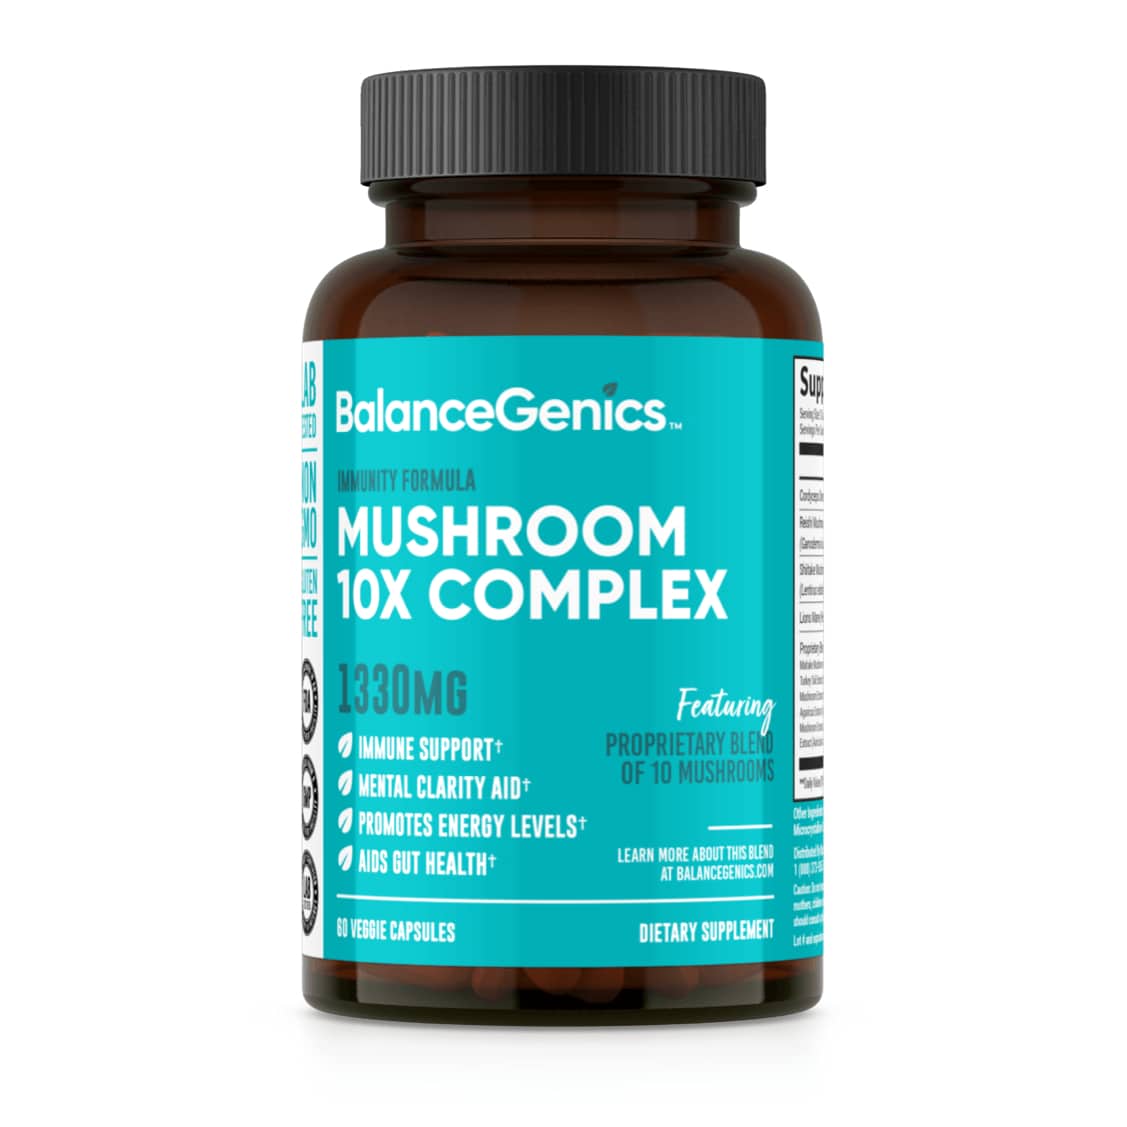 Mushroom 10x Complex